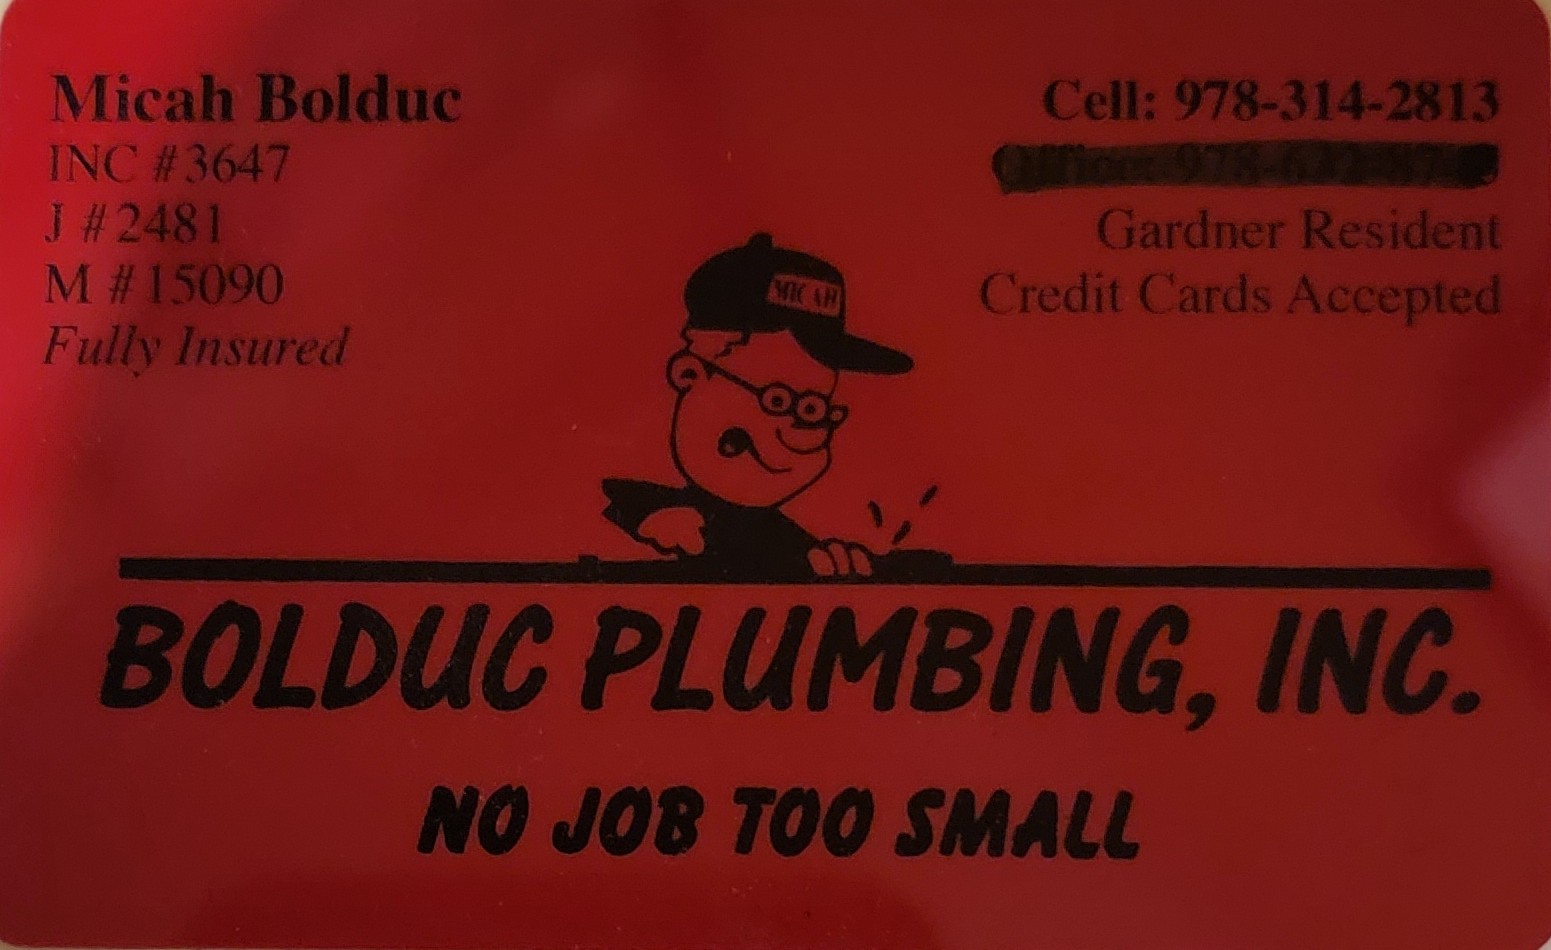 Bolduc Plumbing